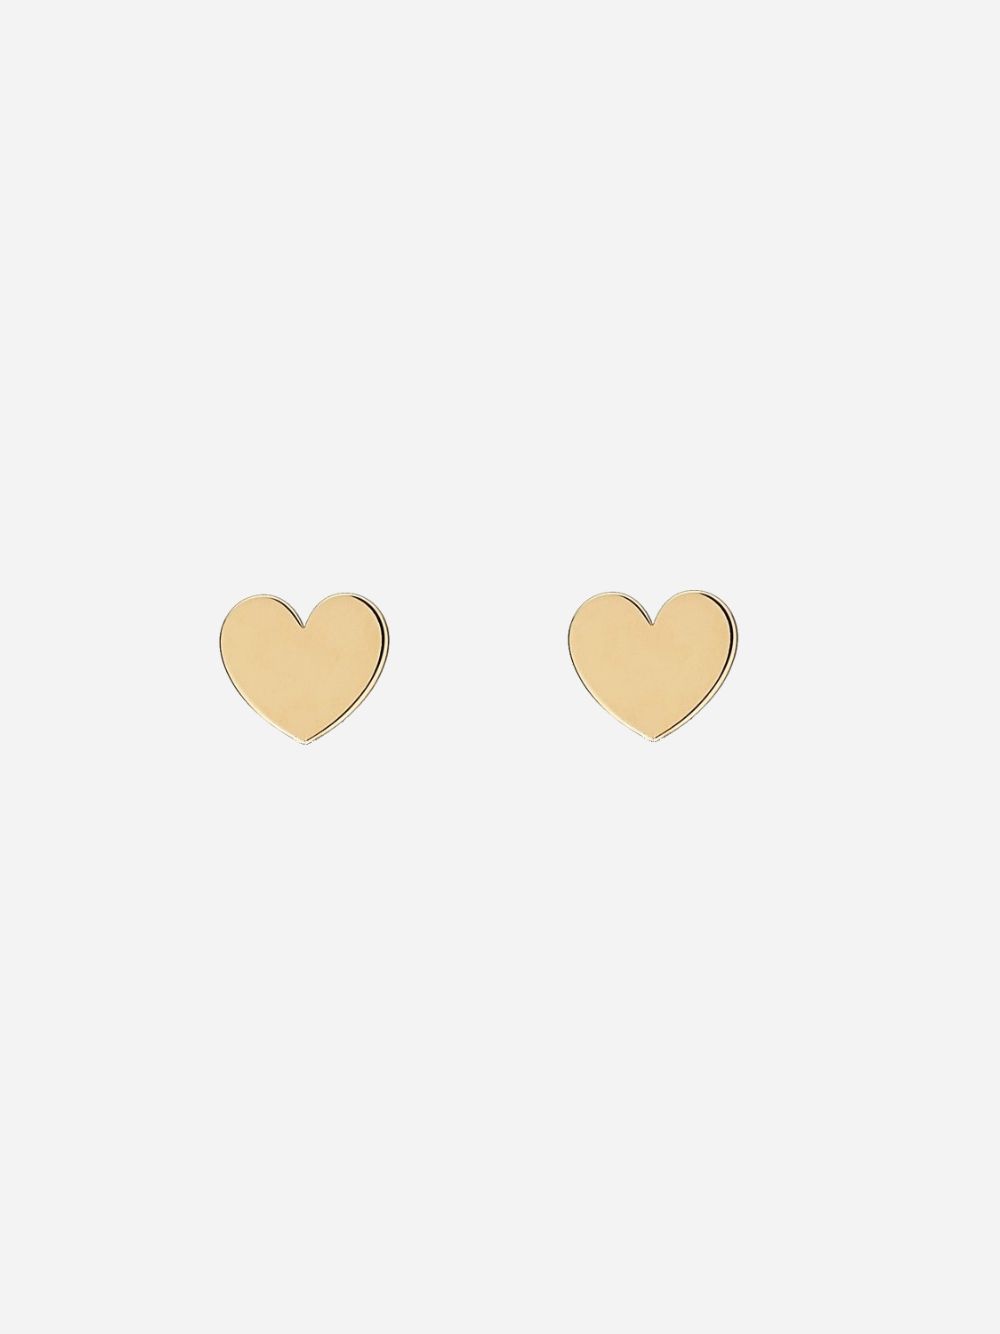 Golden Love Heart Earrings